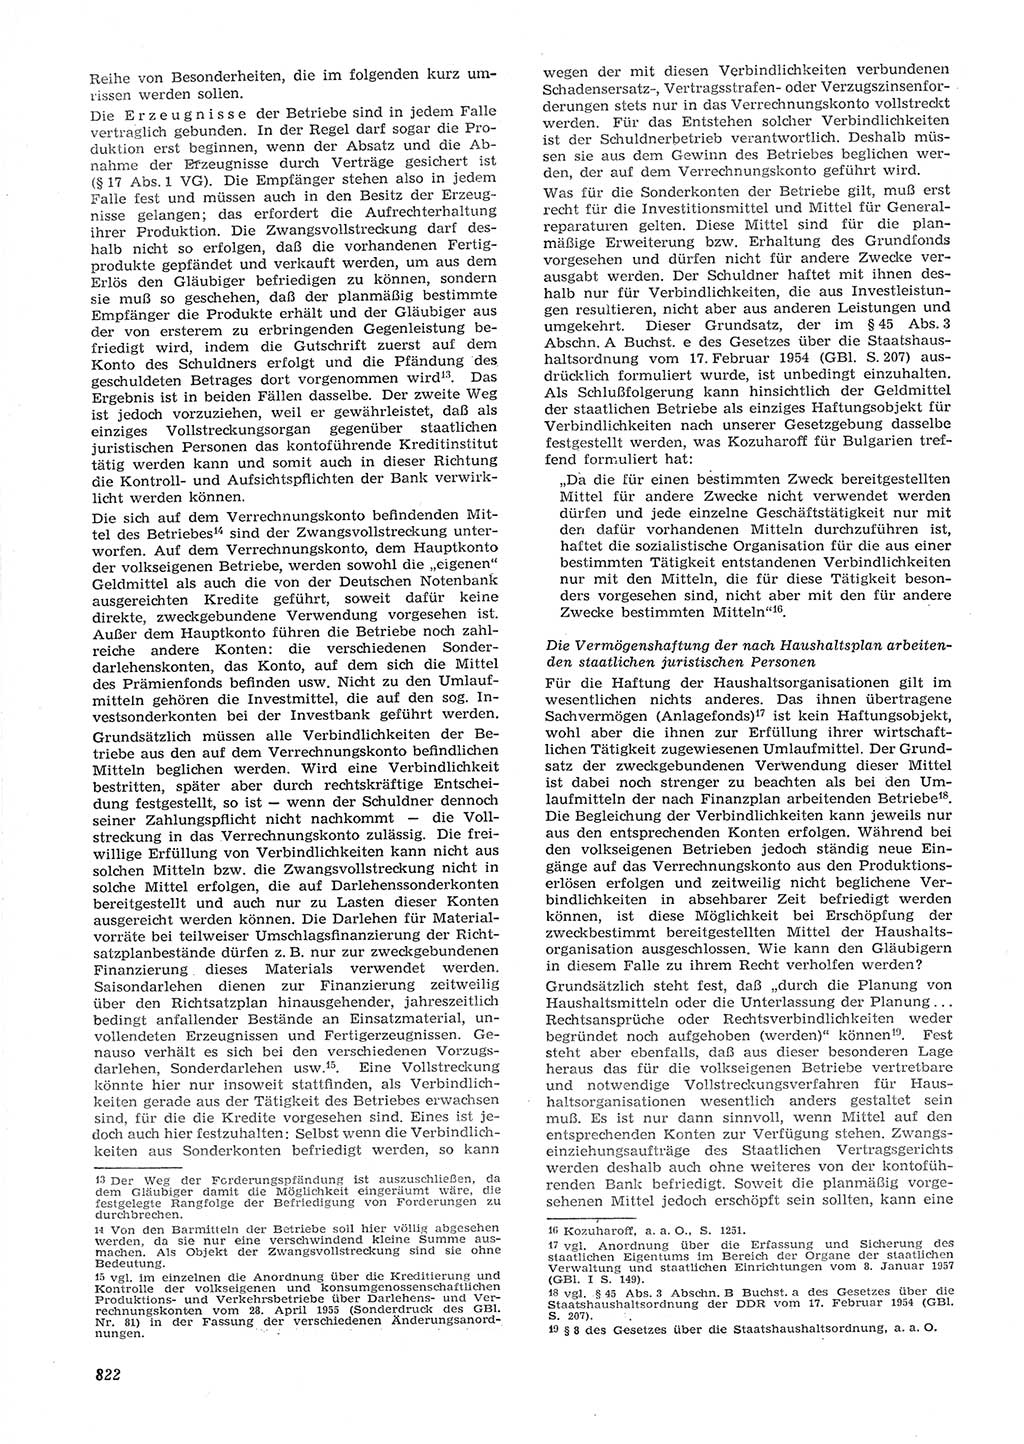 Neue Justiz (NJ), Zeitschrift für Recht und Rechtswissenschaft [Deutsche Demokratische Republik (DDR)], 15. Jahrgang 1961, Seite 822 (NJ DDR 1961, S. 822)